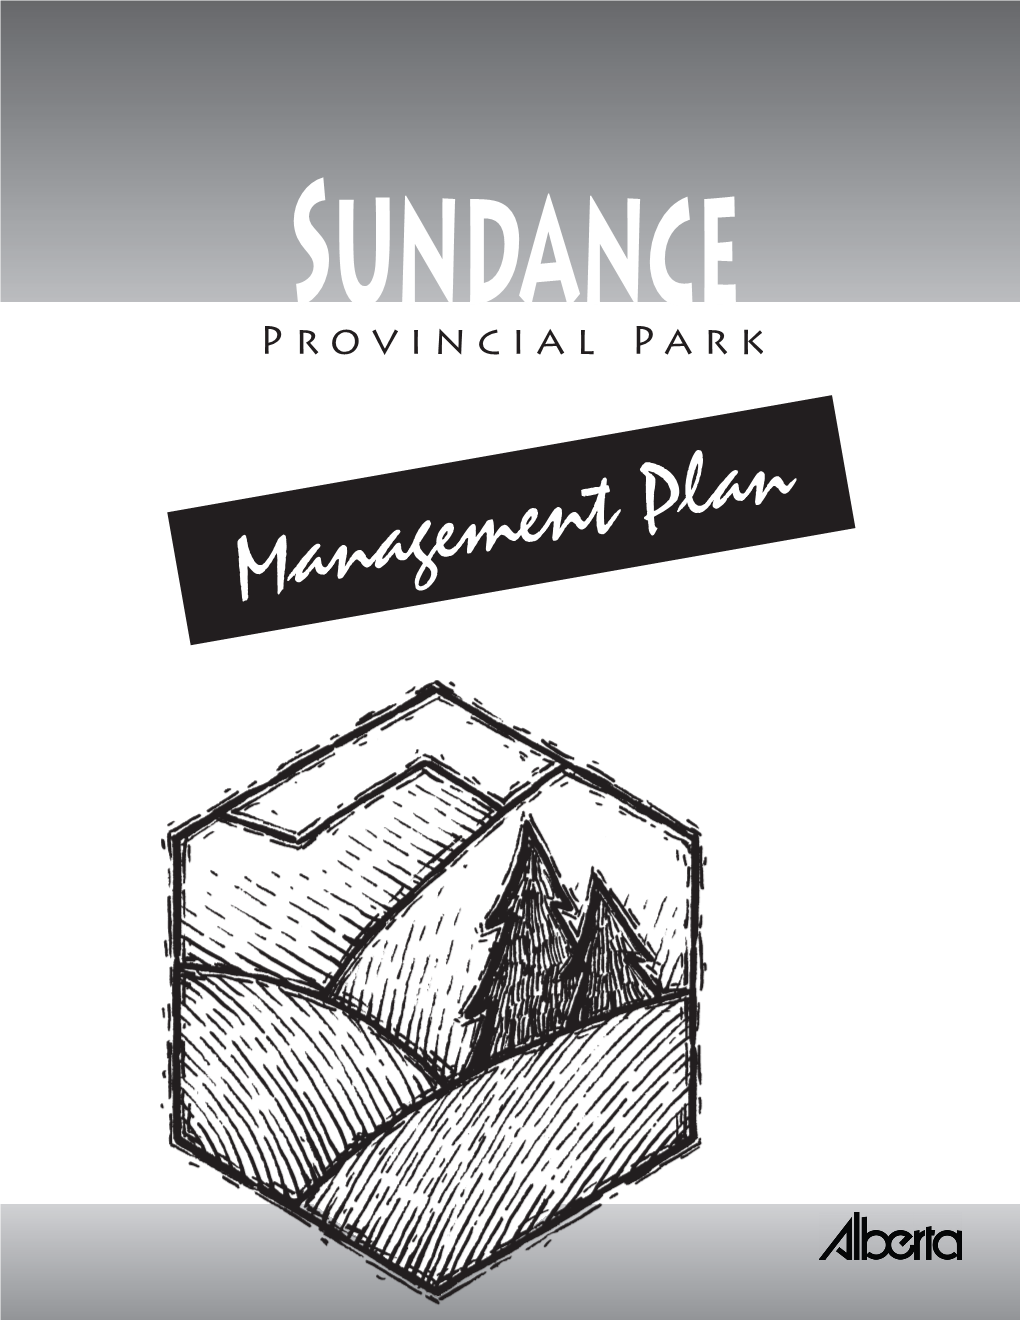 Sundance Provincial Park Management Plan